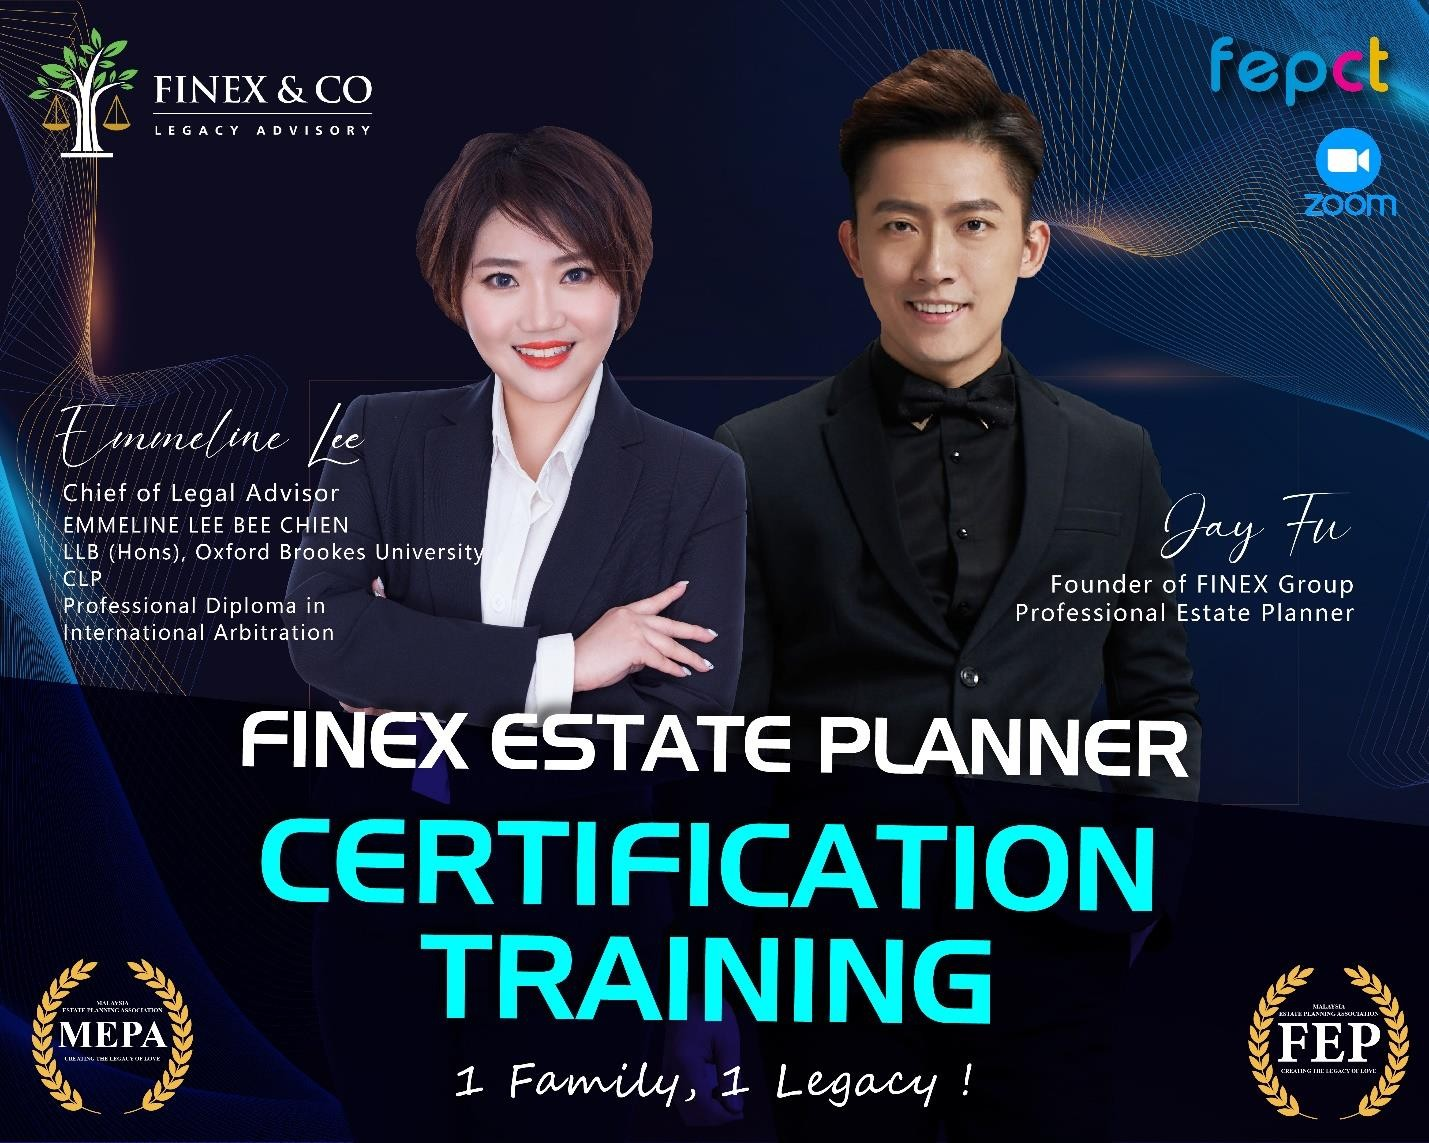 Jay Fu and Emmeline Lee - Finex estate planner certification training program